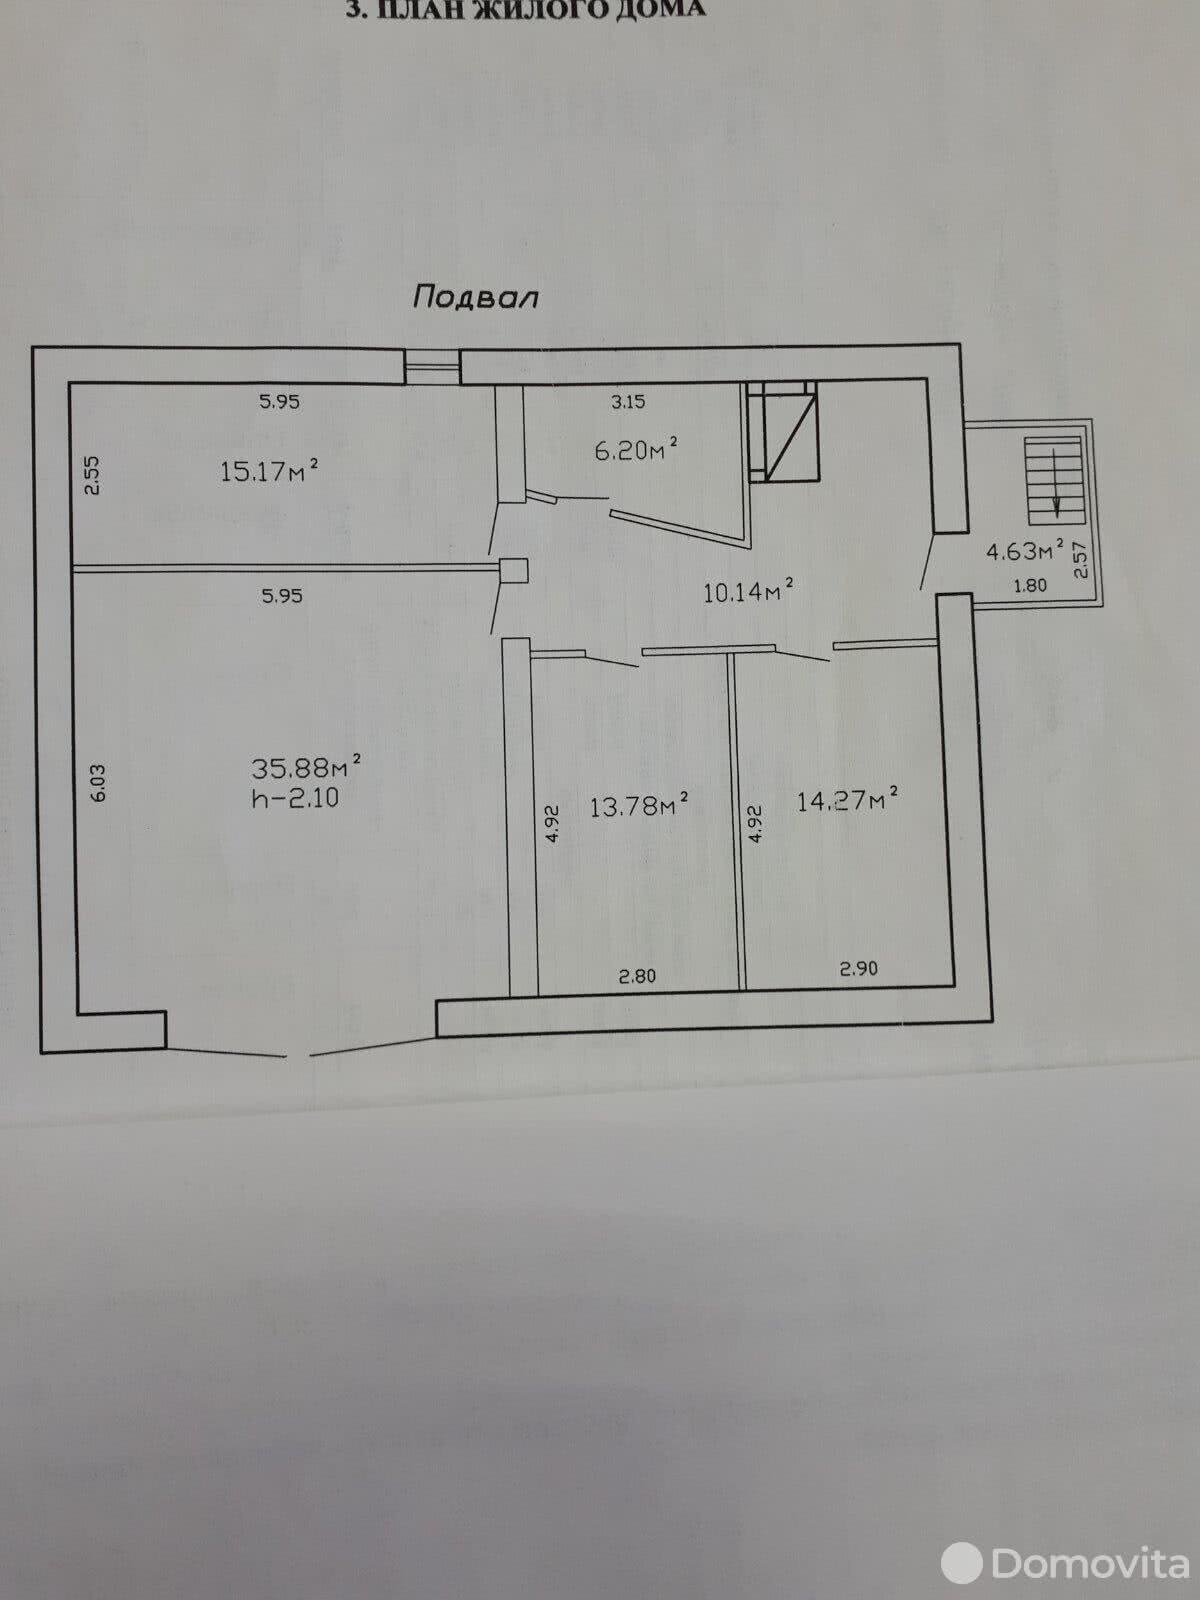 Продать 3-этажный дом в Калинковичах, Гомельская область ул. Волгоградская, 80000USD, код 636516 - фото 3